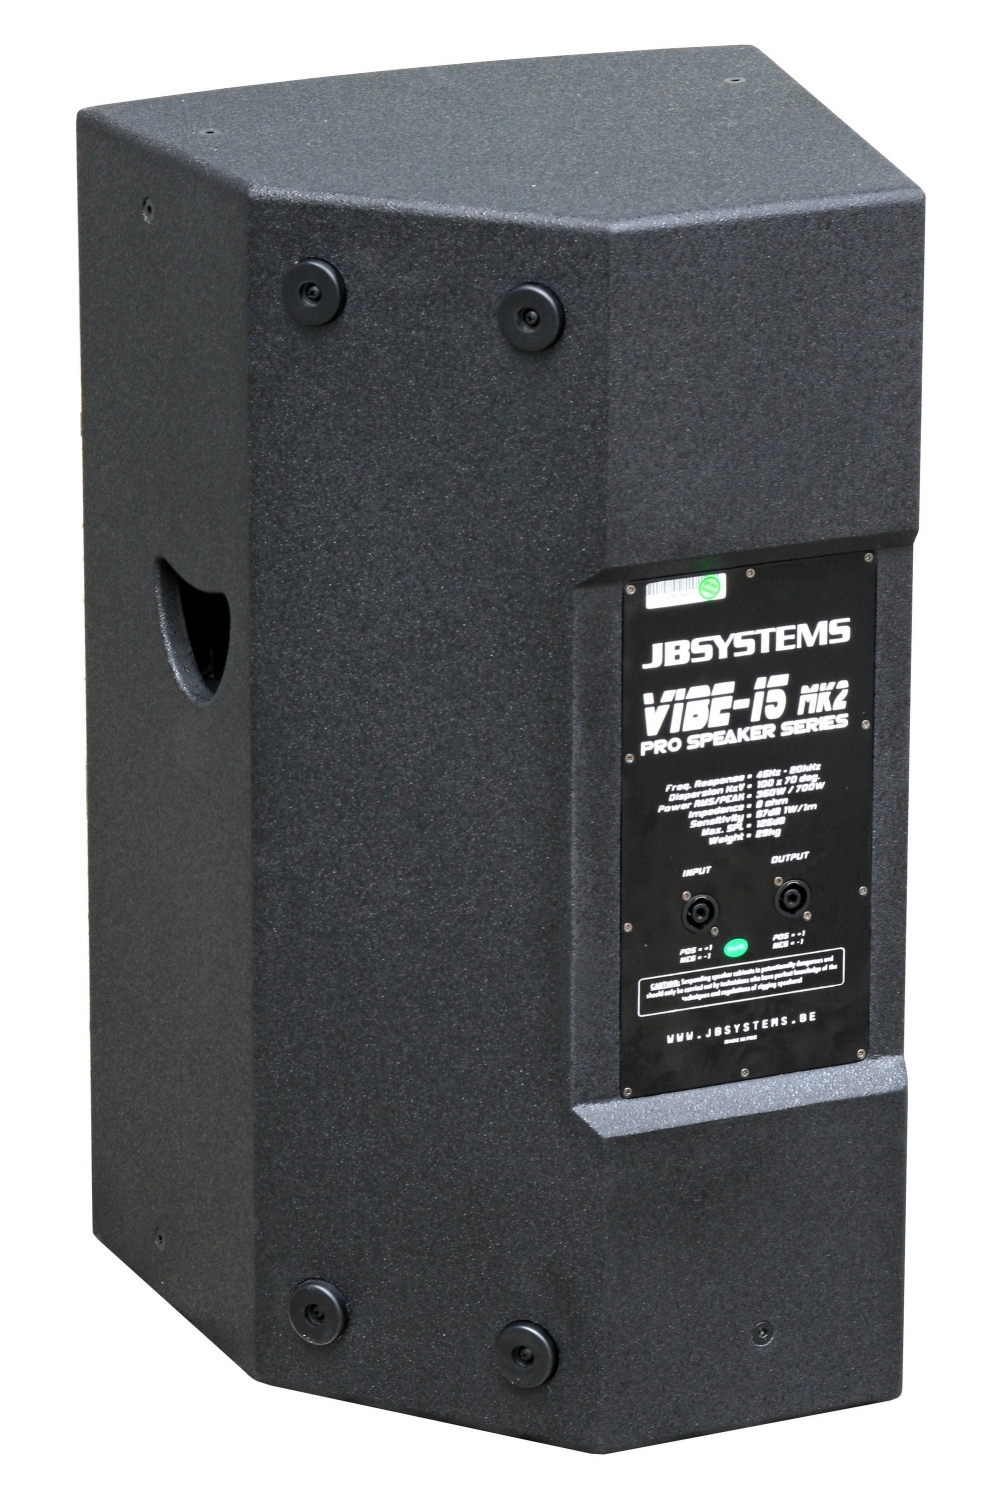 JB Systems - VIBE-15 MkII